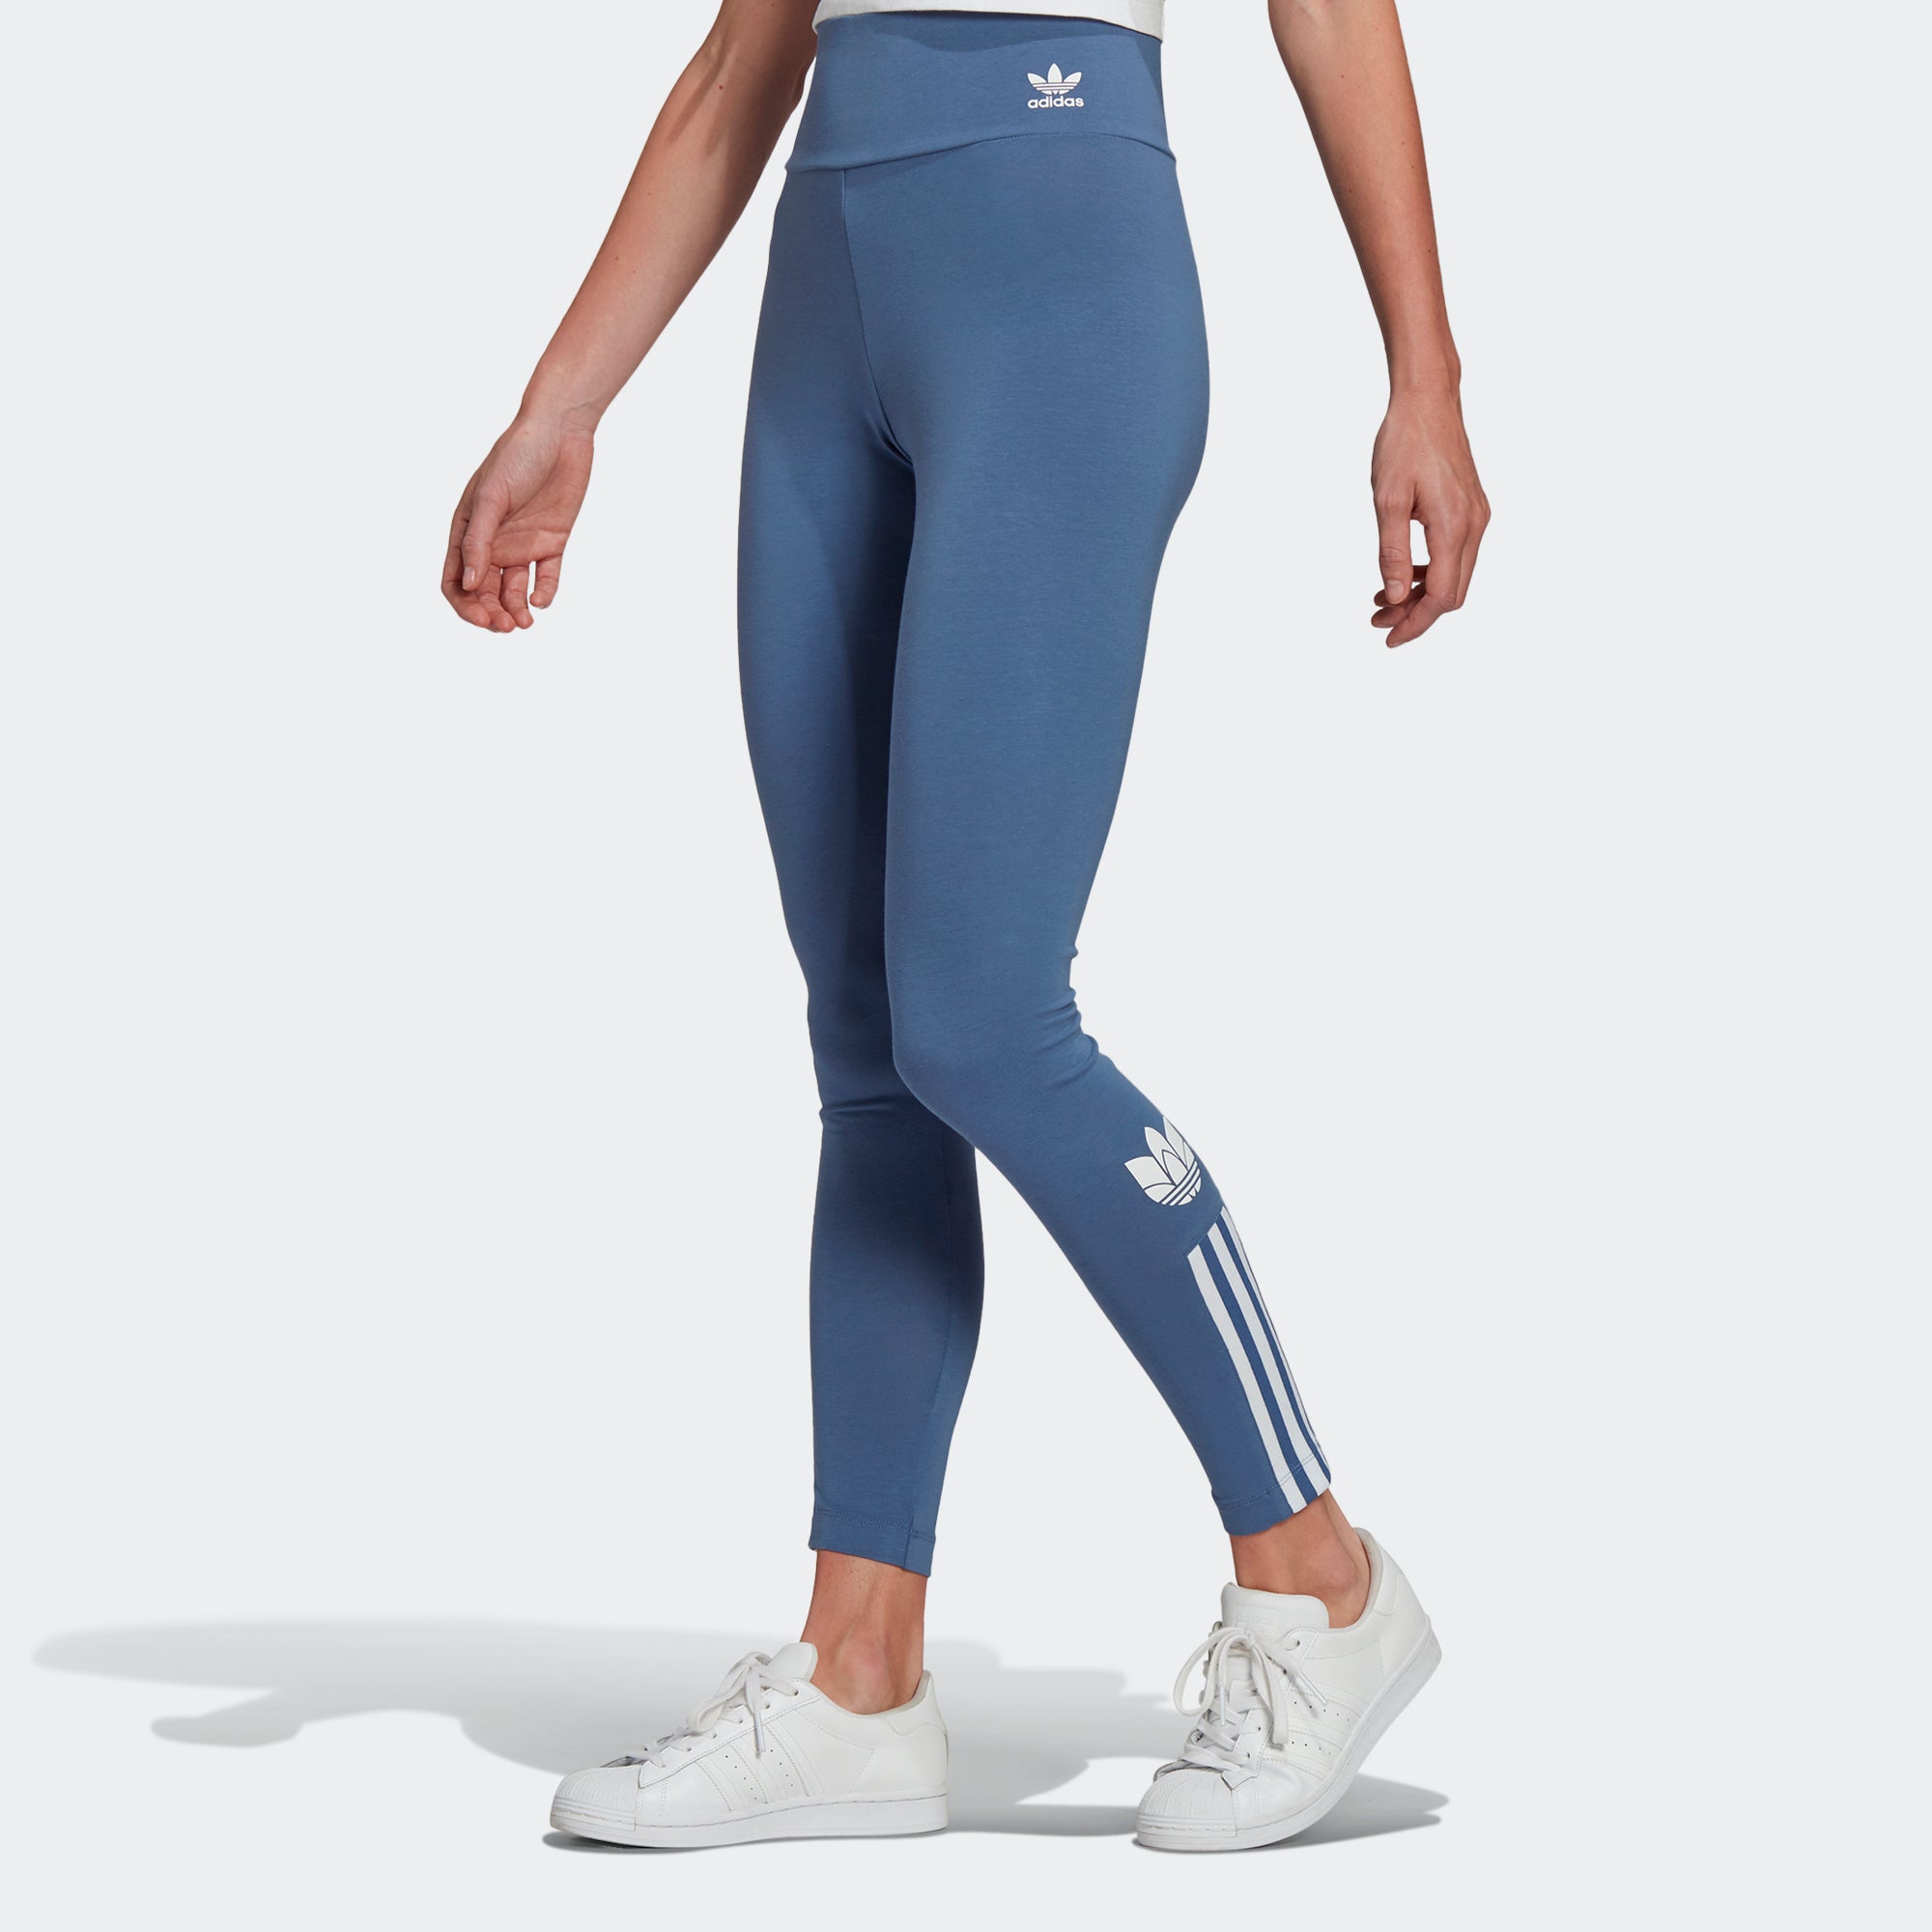 Adidas womens leggings xl - Gem